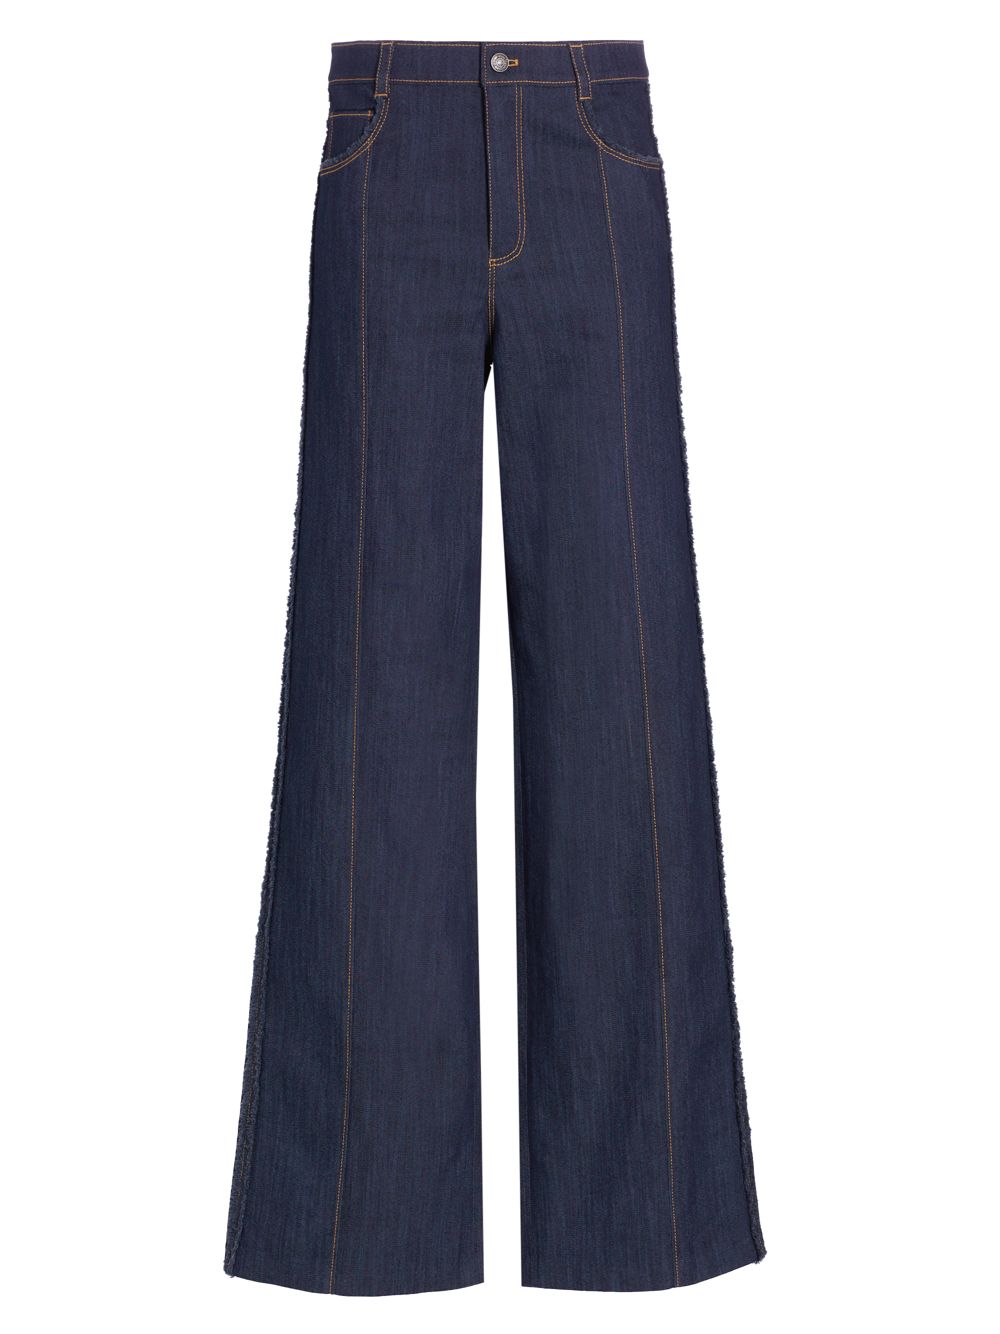 Эластичные прямые джинсы Francine с высокой посадкой Cinq à Sept, индиго джинсы francine с высокой посадкой цвета индиго cinq à sept цвет blue